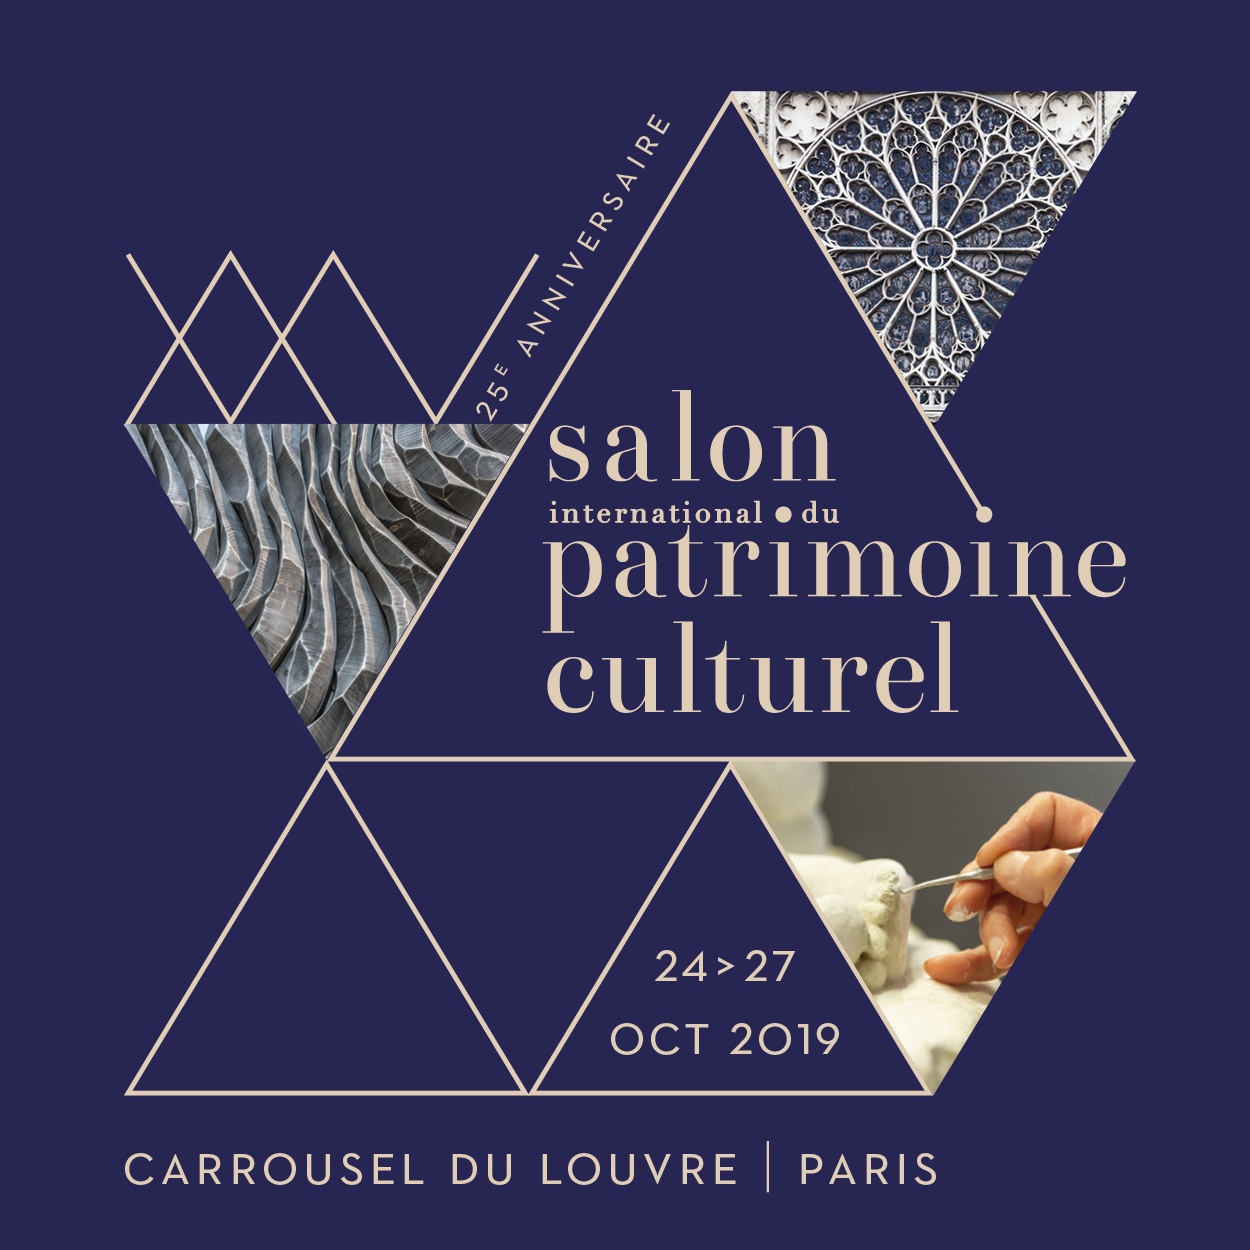 Salon international du patrimoine culturel 2019 : l’édition anniversaire !